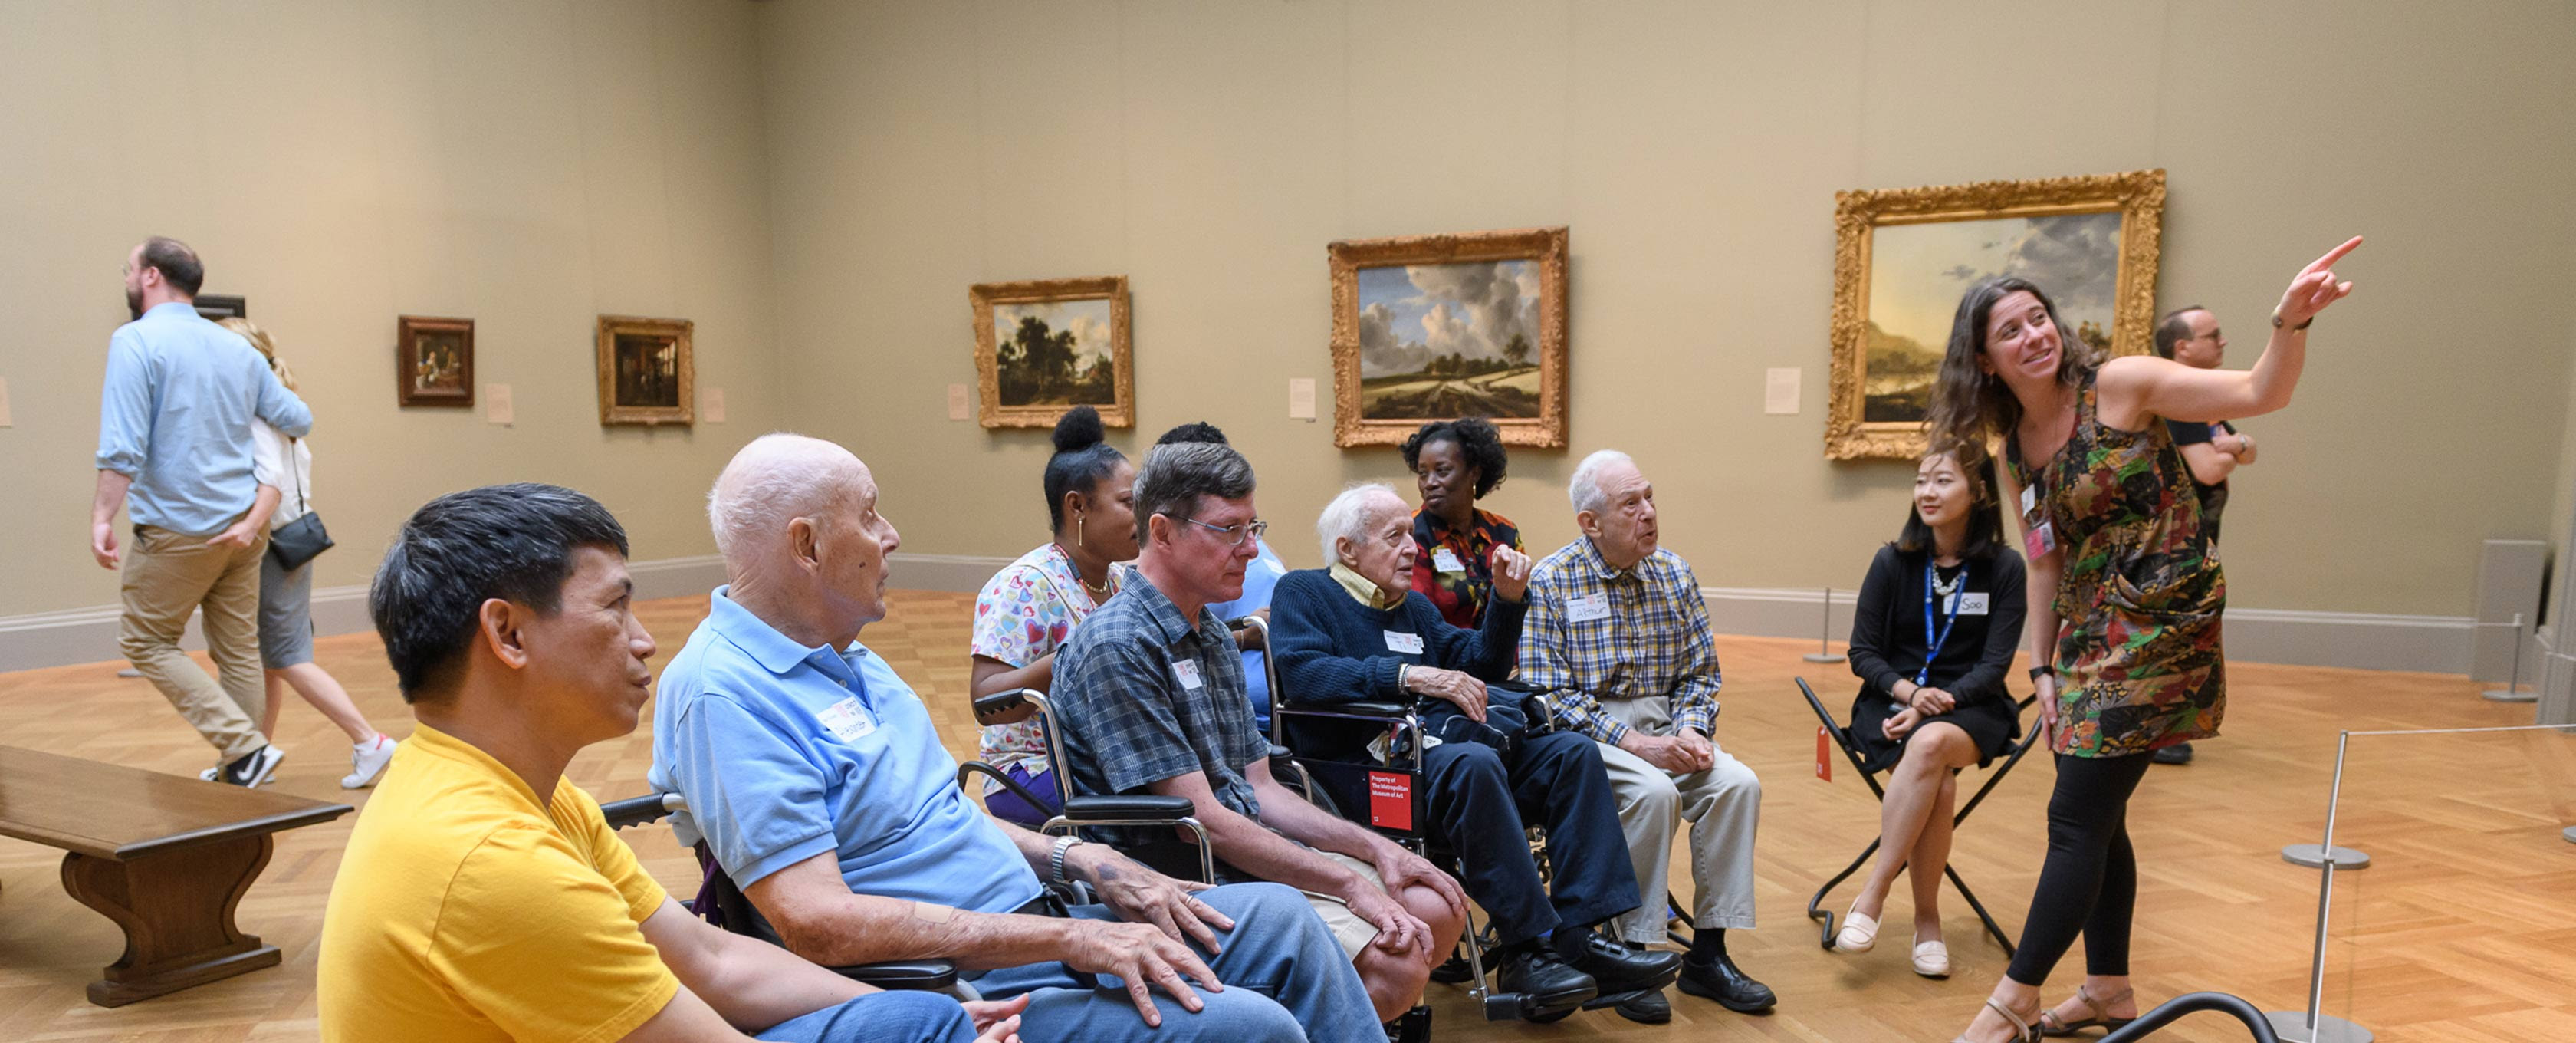 Um grupo escuta uma mulher discutindo com um artista em uma galeria.